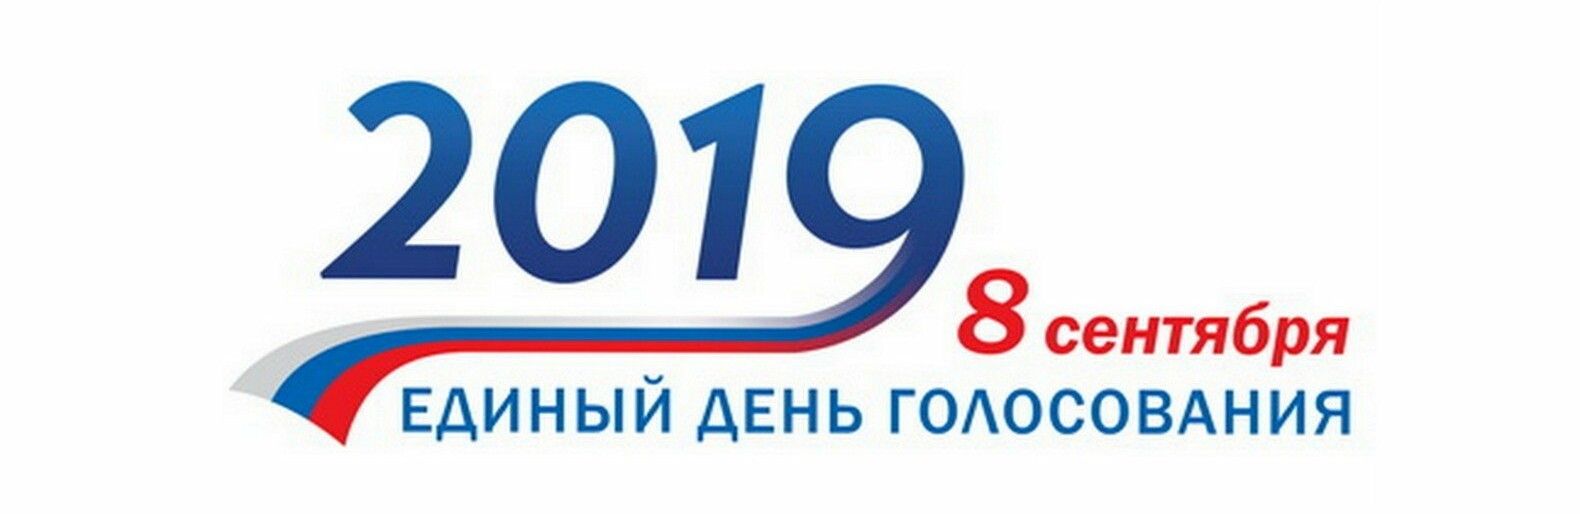 Начинается выдвижение кандидатов на довыборах в Петросовет. На кону — два места